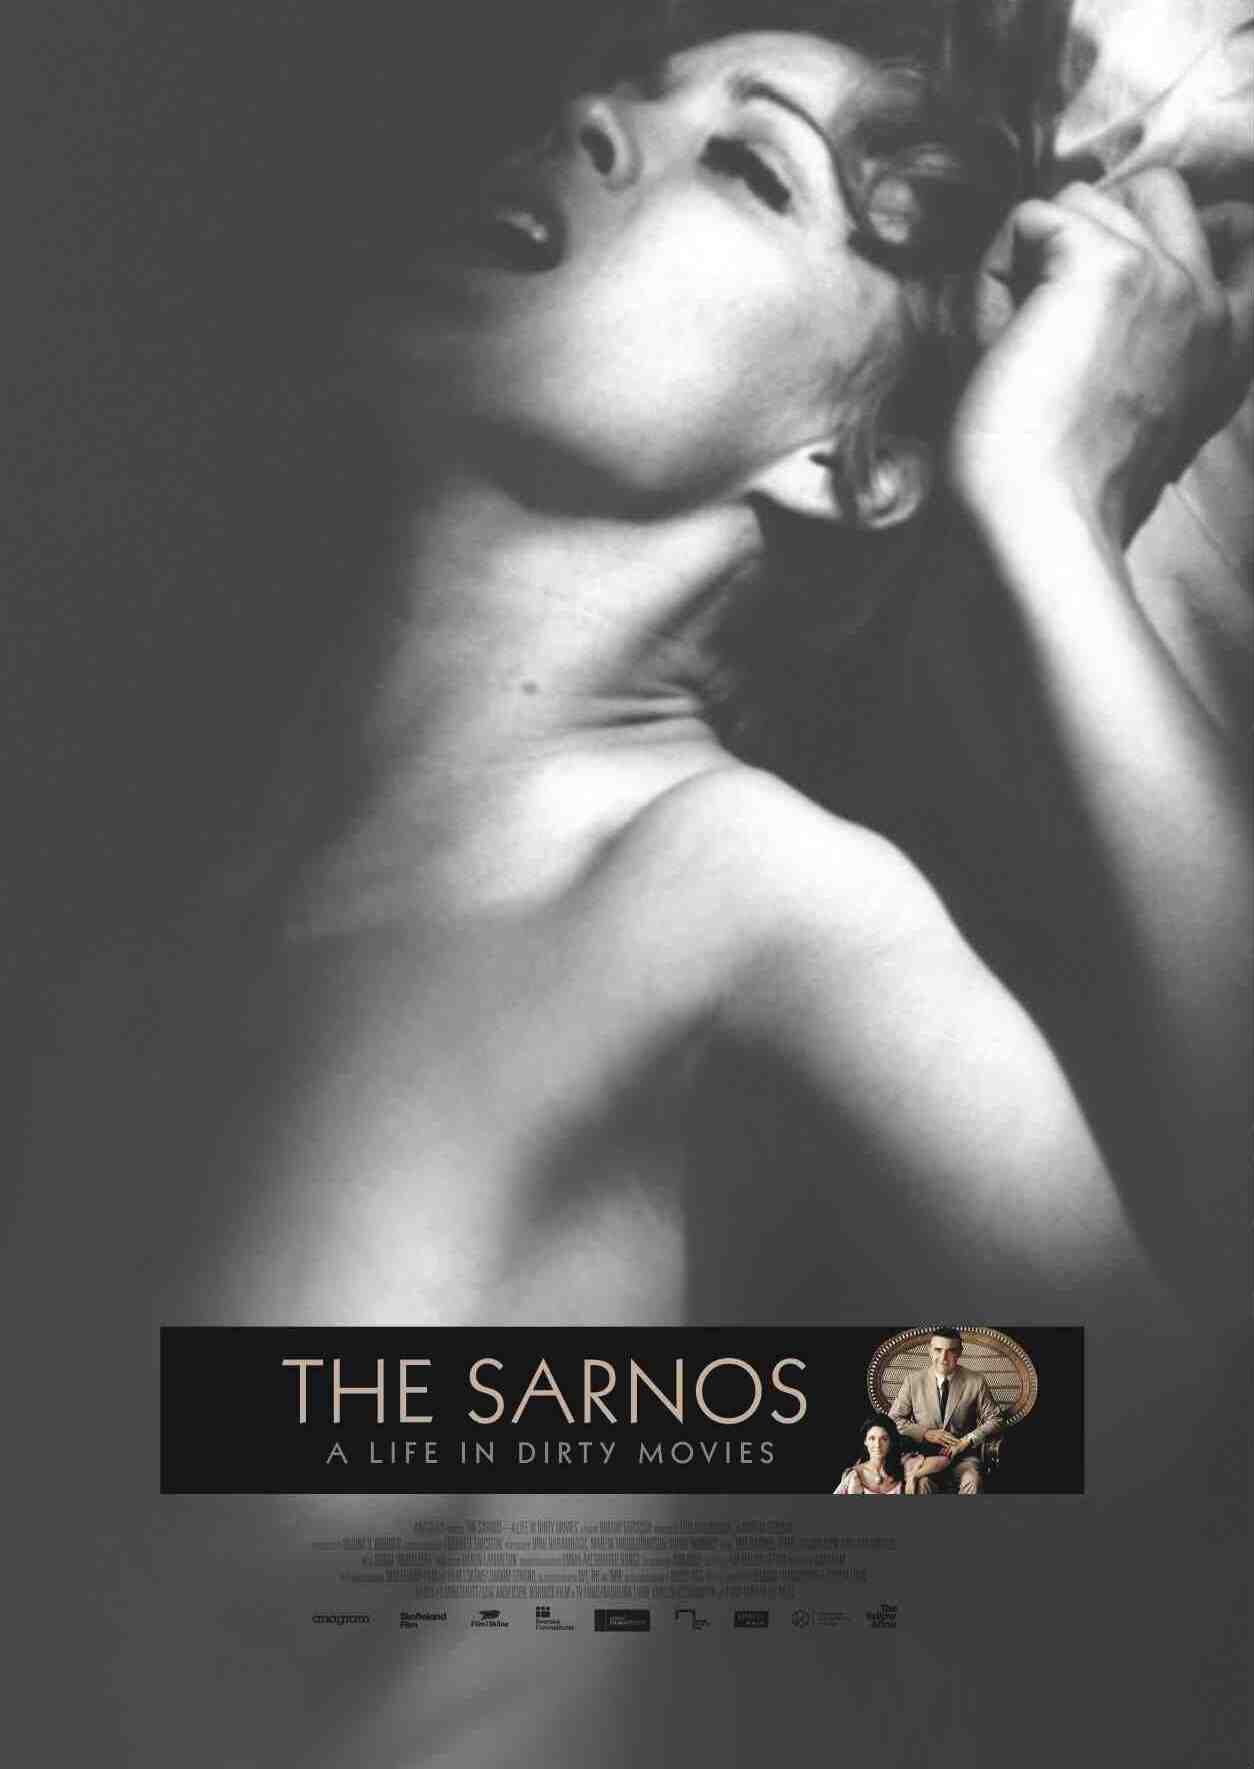 The Sarnos